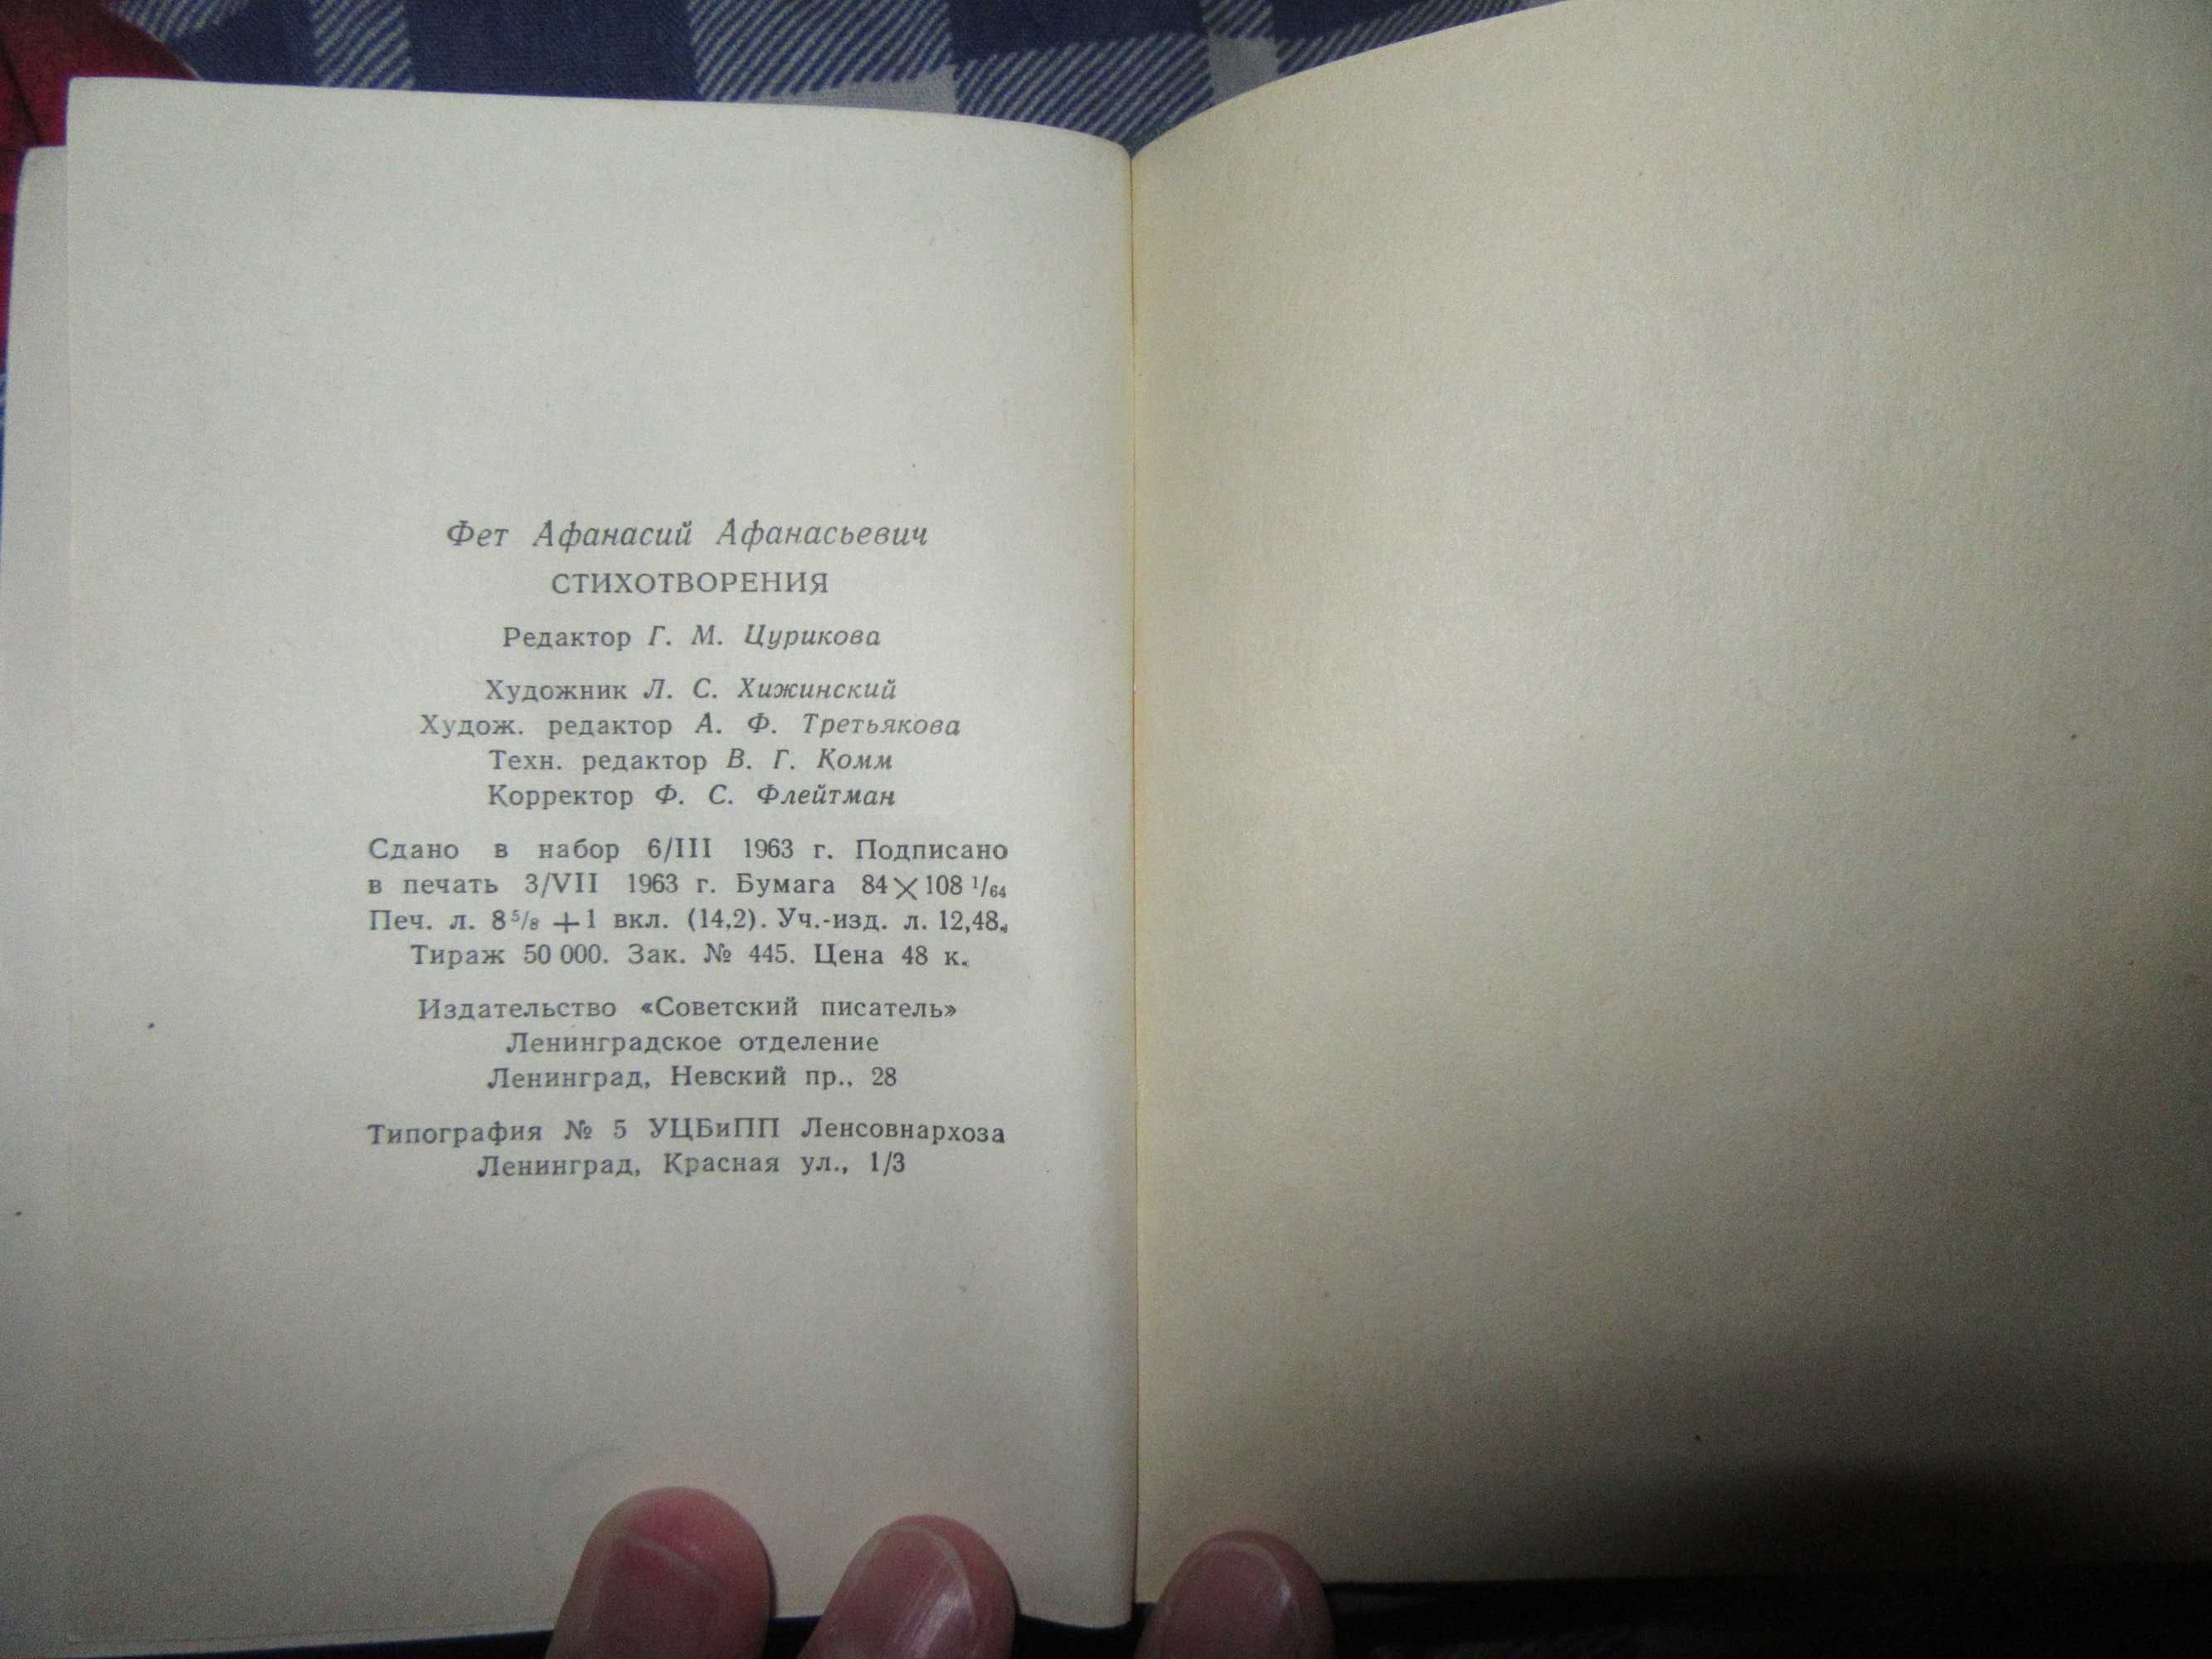 Фет А. А. Стихотворения. Серия: Библиотека поэта.1963 г.